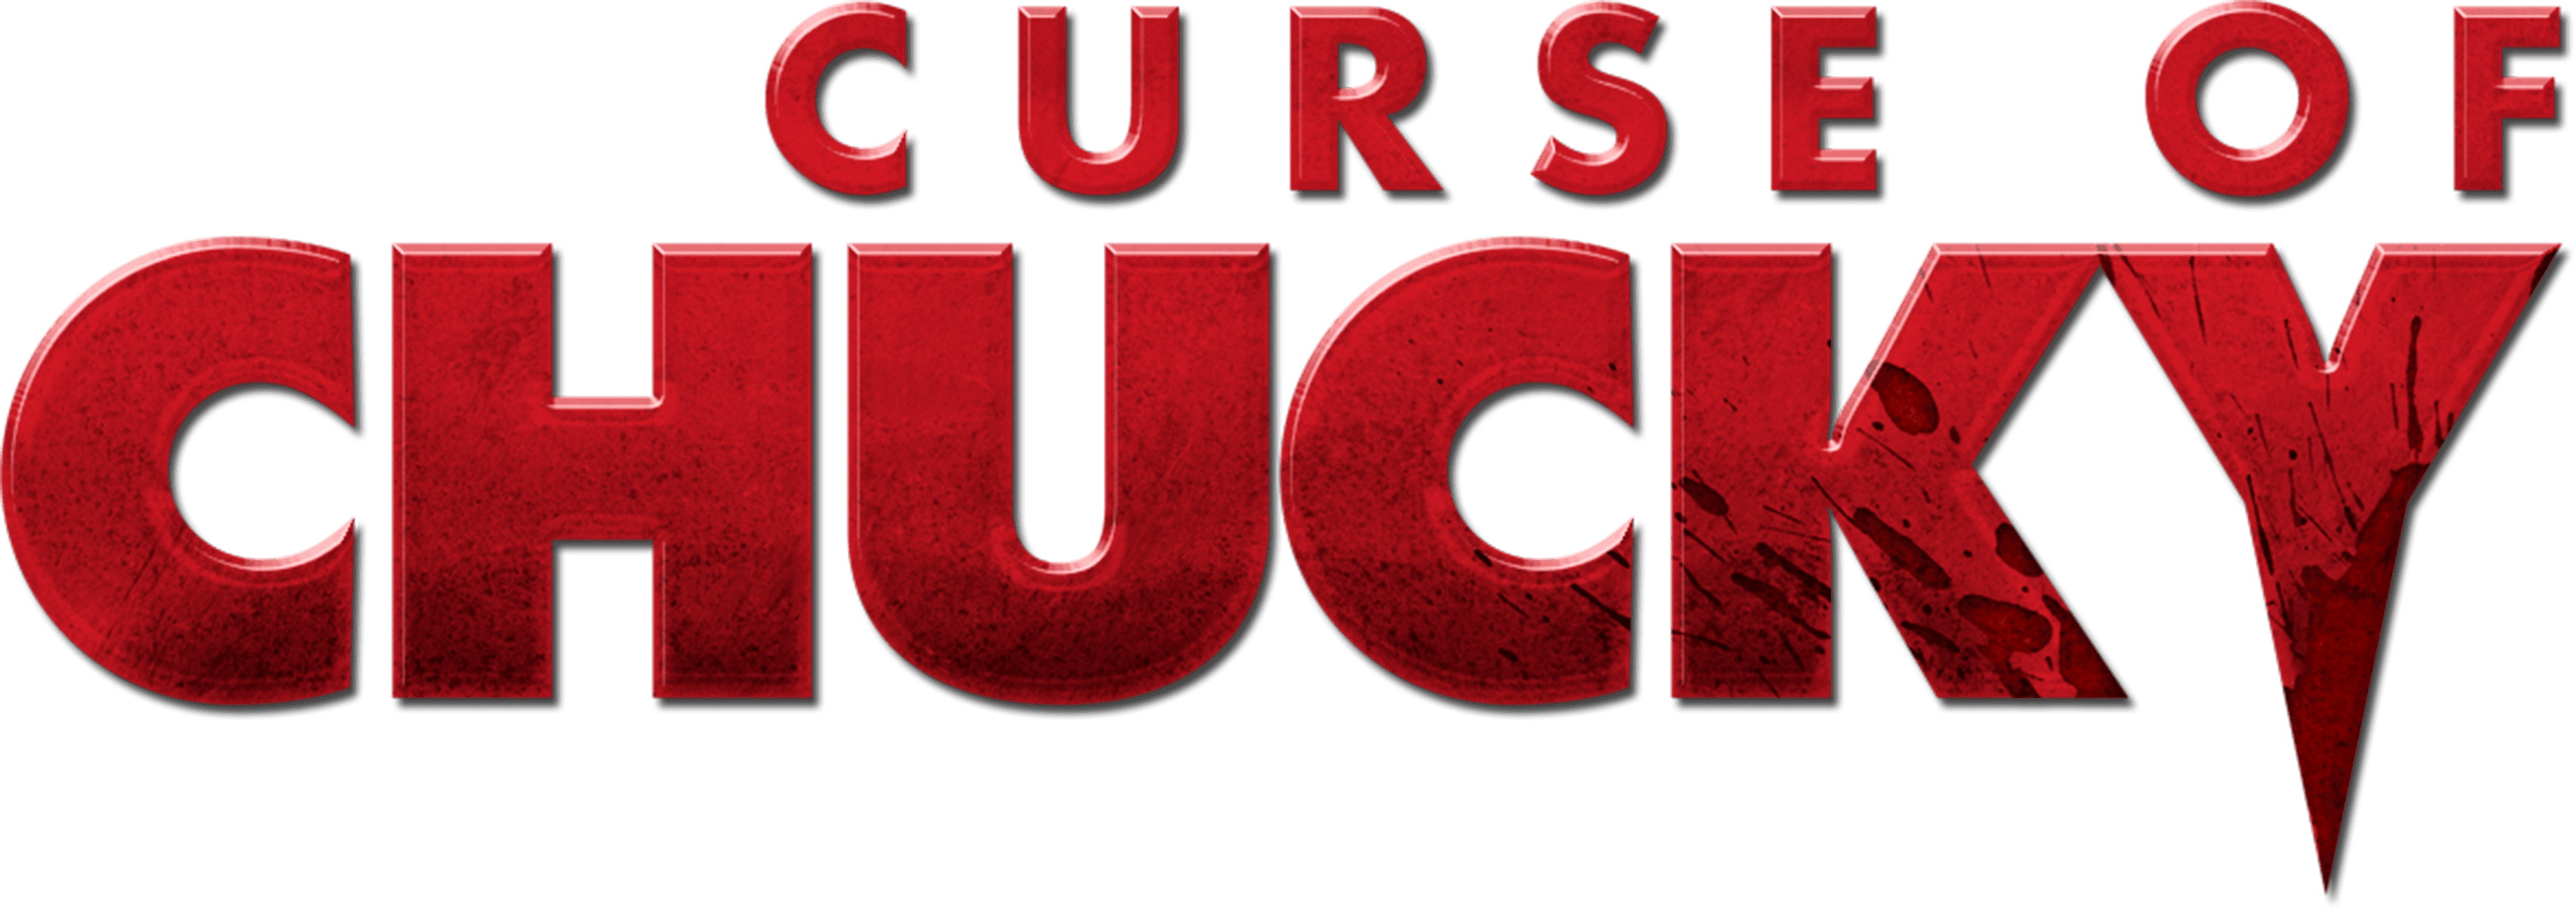 Curse of Chucky logo